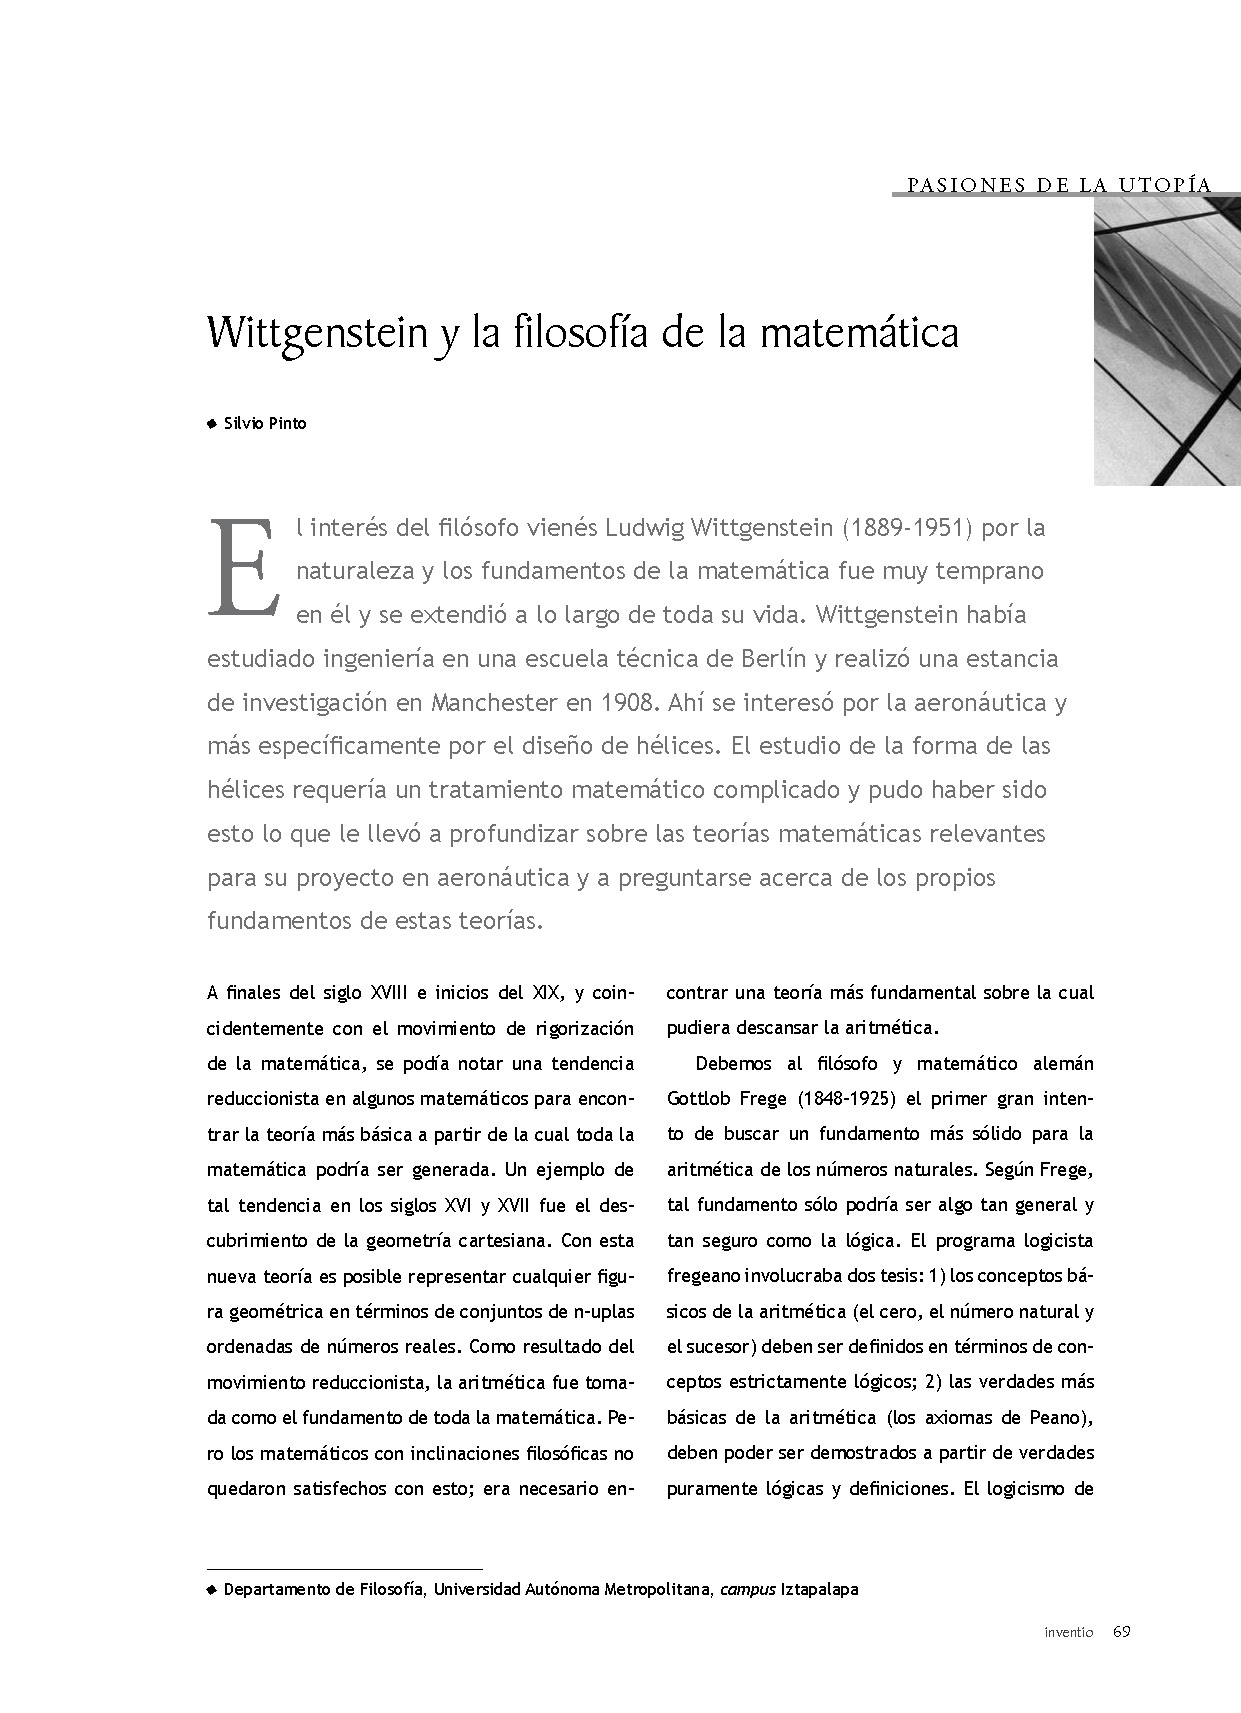 Wittgenstein y la filosofía de la matemática